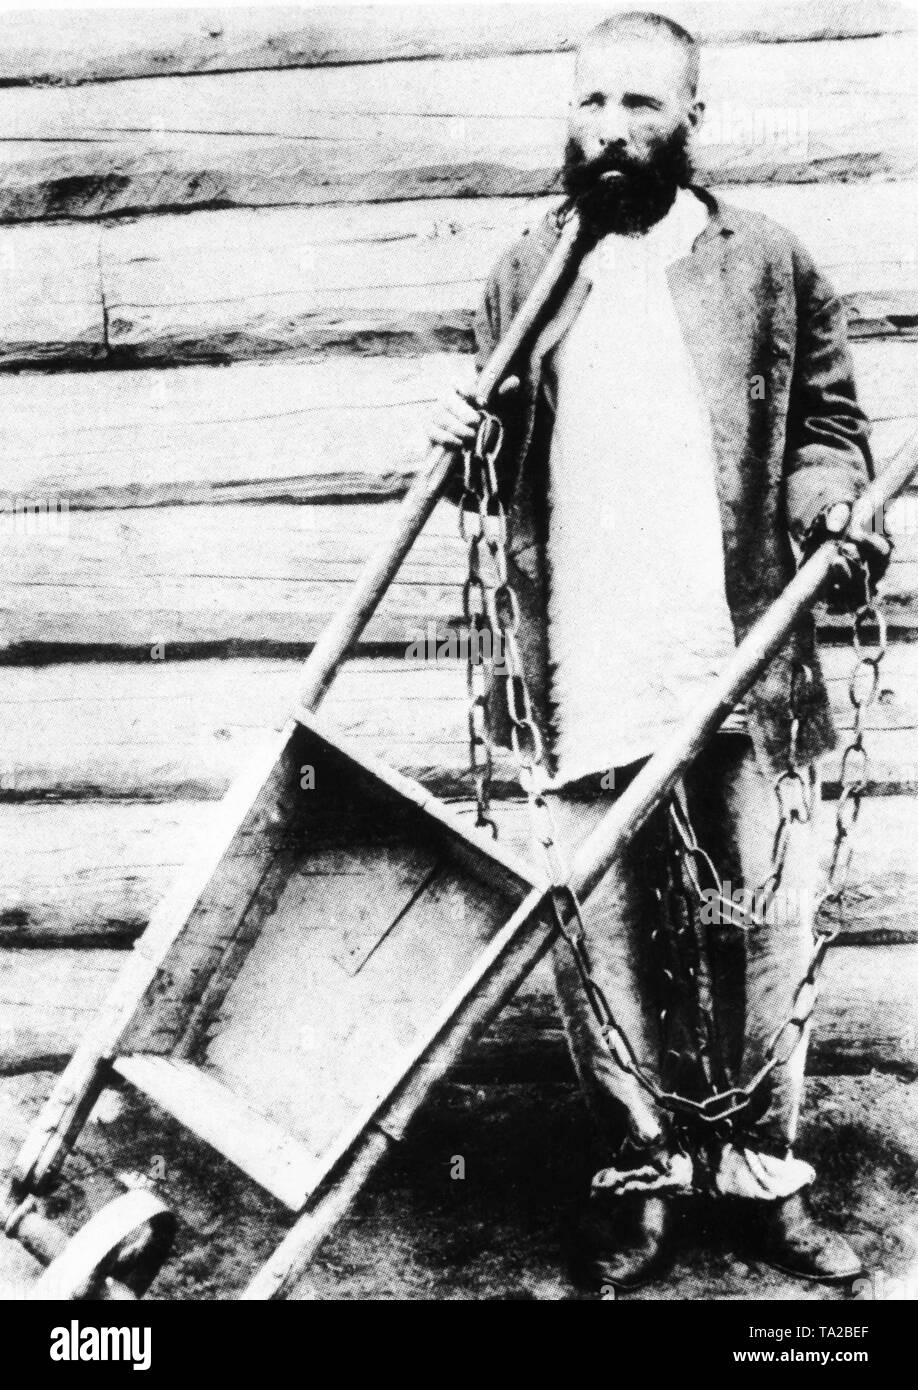 Überführen, die in einem Lager in Sibirien auf Sachalin Insel verbannt wurde, mit geschmiedeten Ketten und eine Schubkarre. Foto von Anton Tschechow genommen Stockfoto